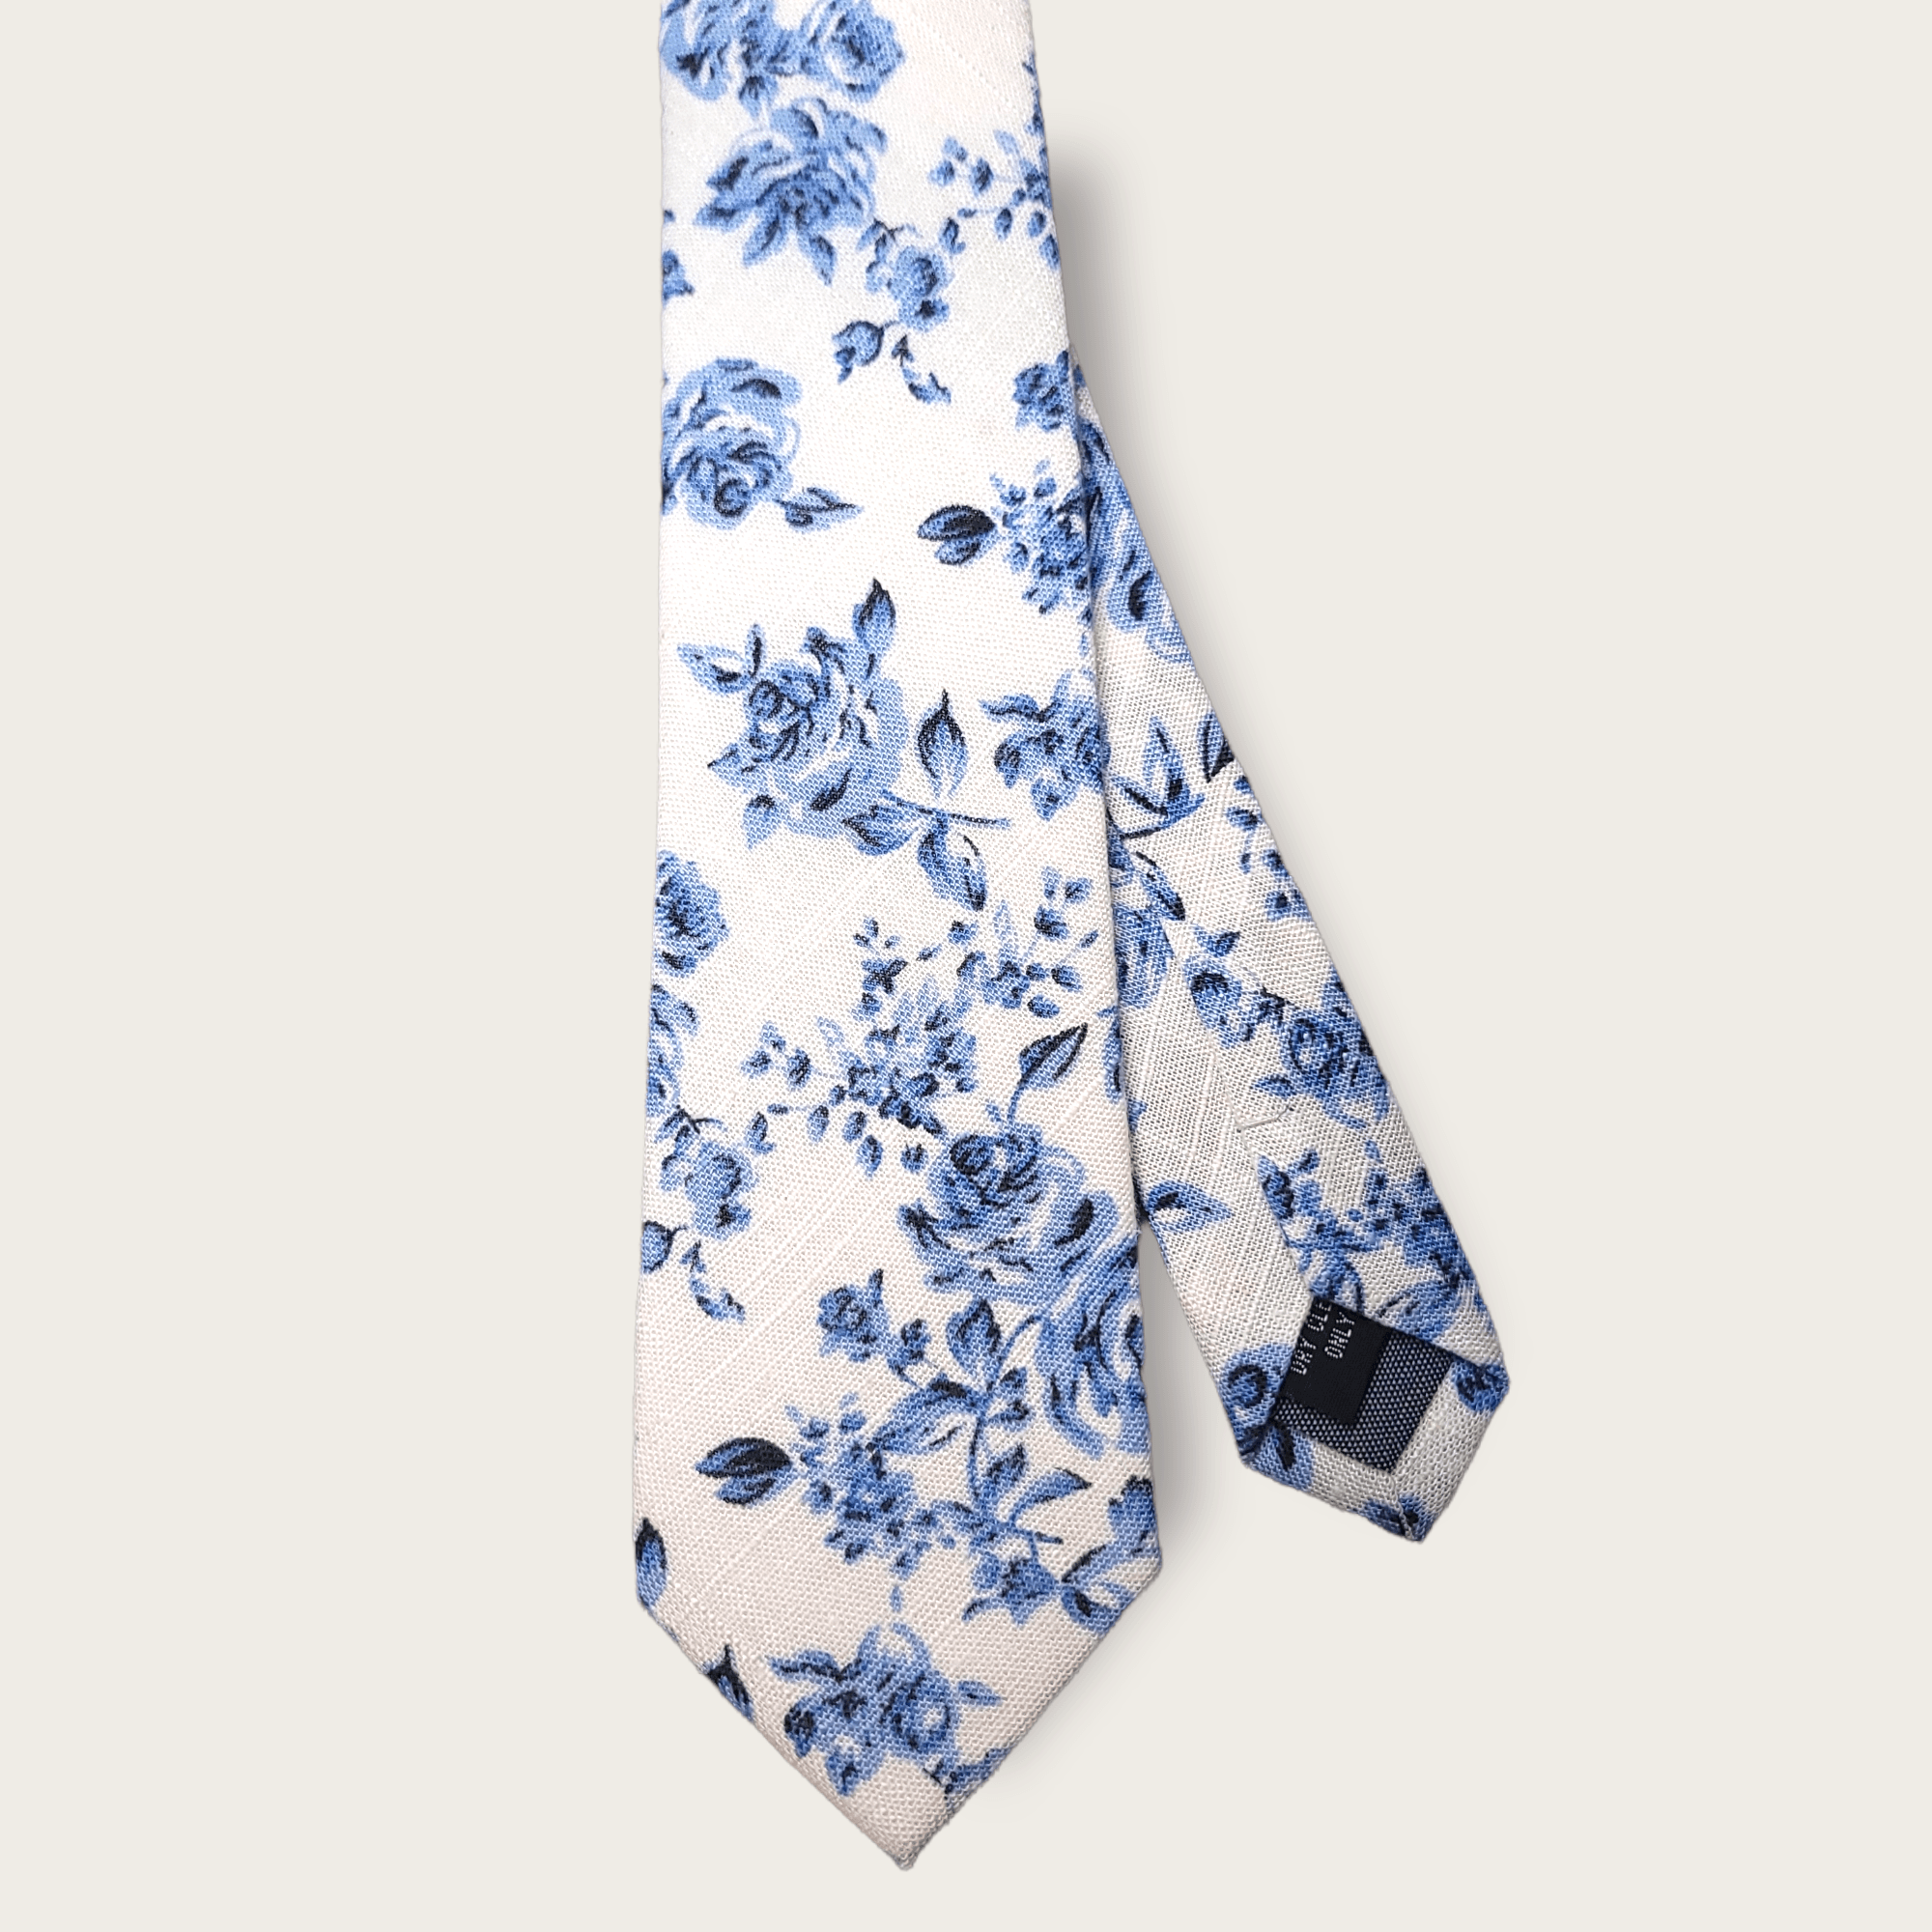 White Light Blue Floral Slim Tie - STYLETIE